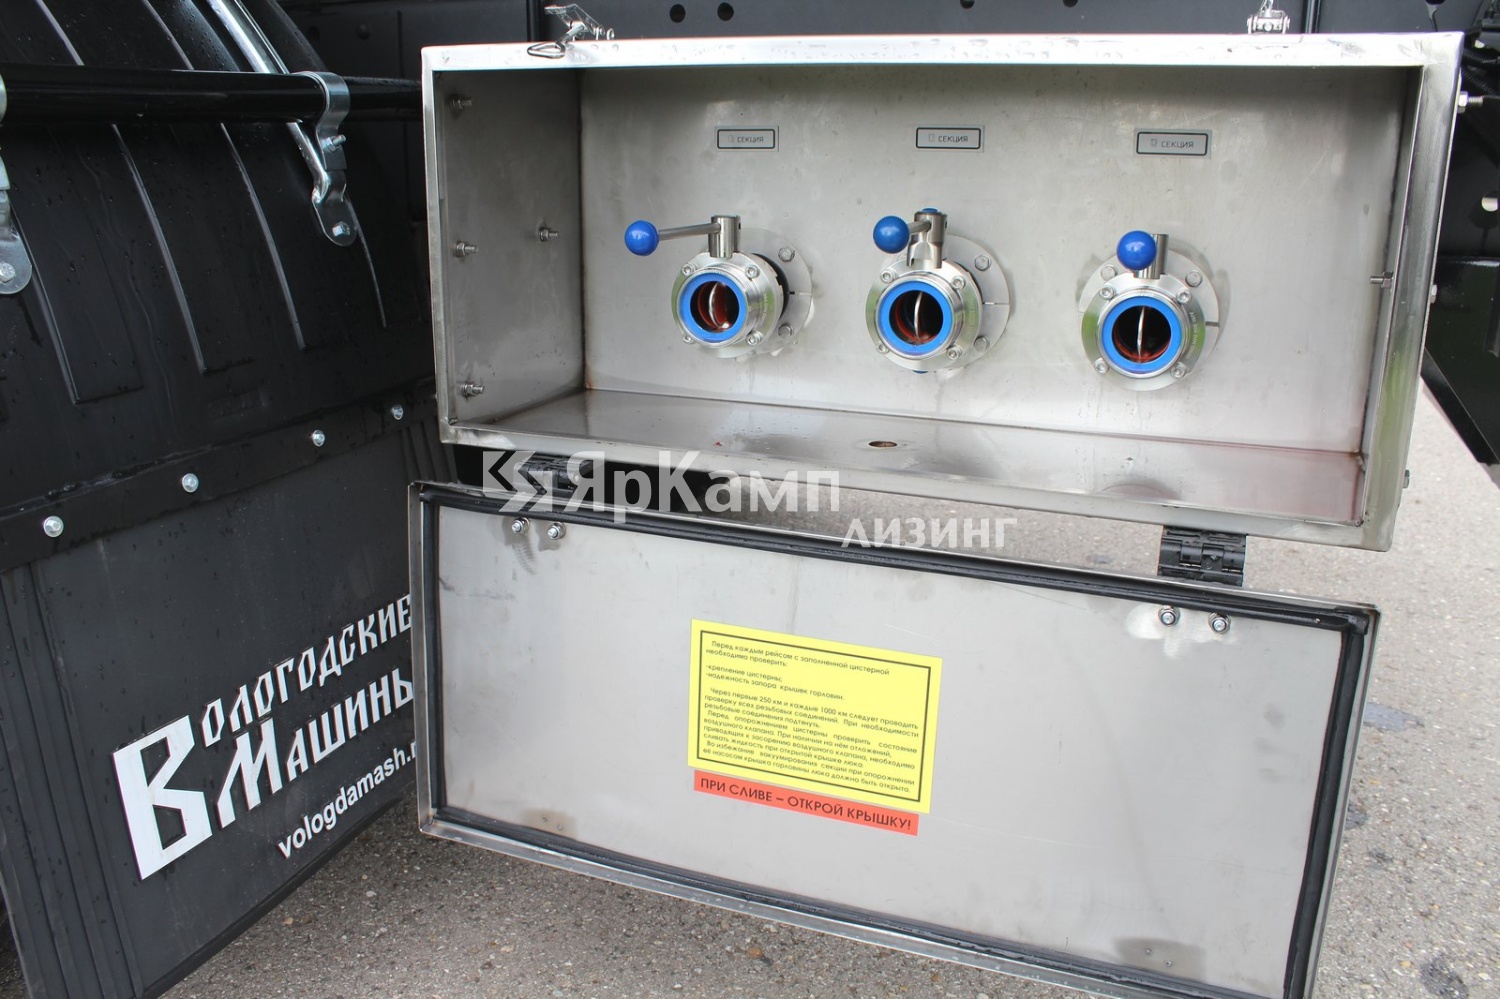 Цистерна 560360 для перевозки жидкостей вместимостью 10,5 куб.м. на шасси КАМАЗ 65115 (6x4) отгружена в лизинг